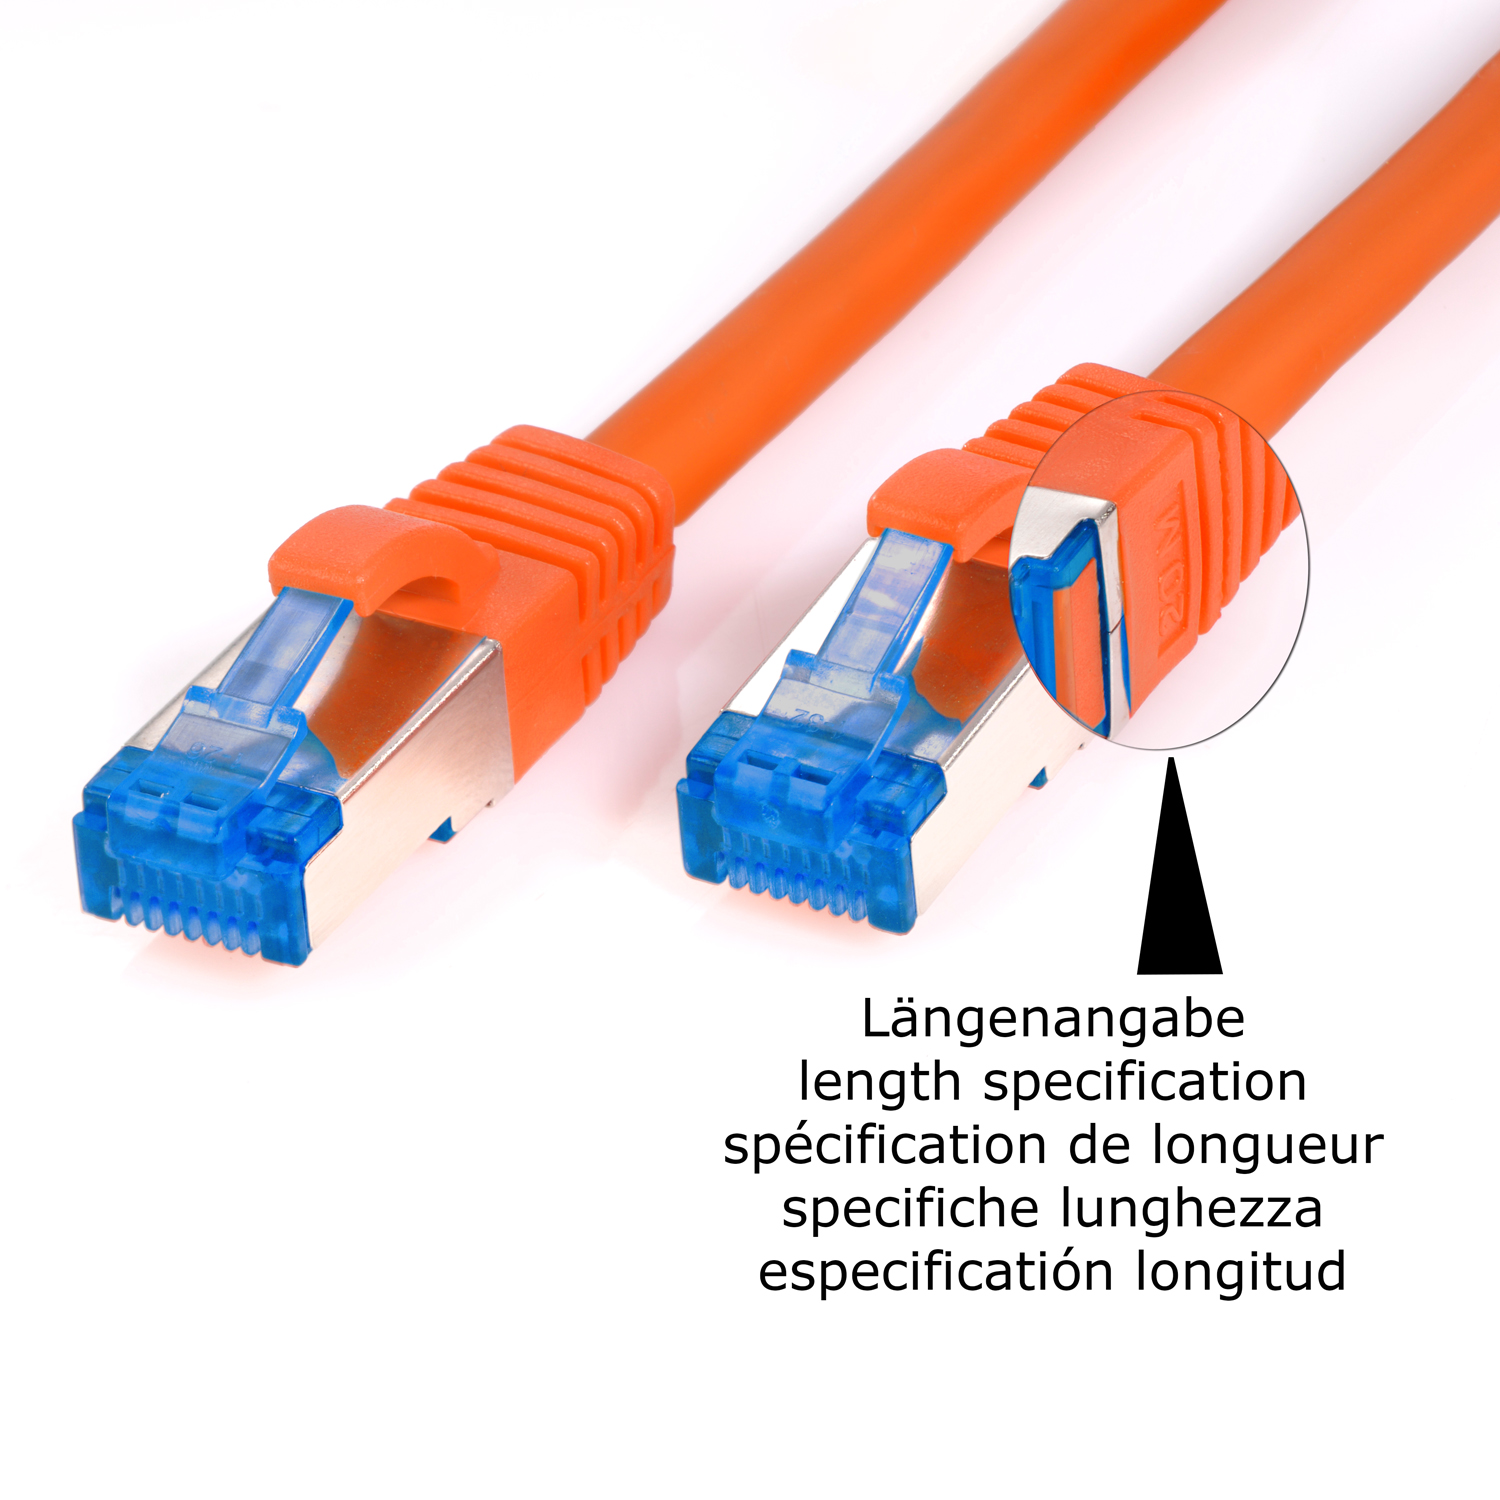 Patchkabel m 7,5 TPFNET 10GBit, Netzwerkkabel, / Netzwerkkabel S/FTP orange, 7,5m